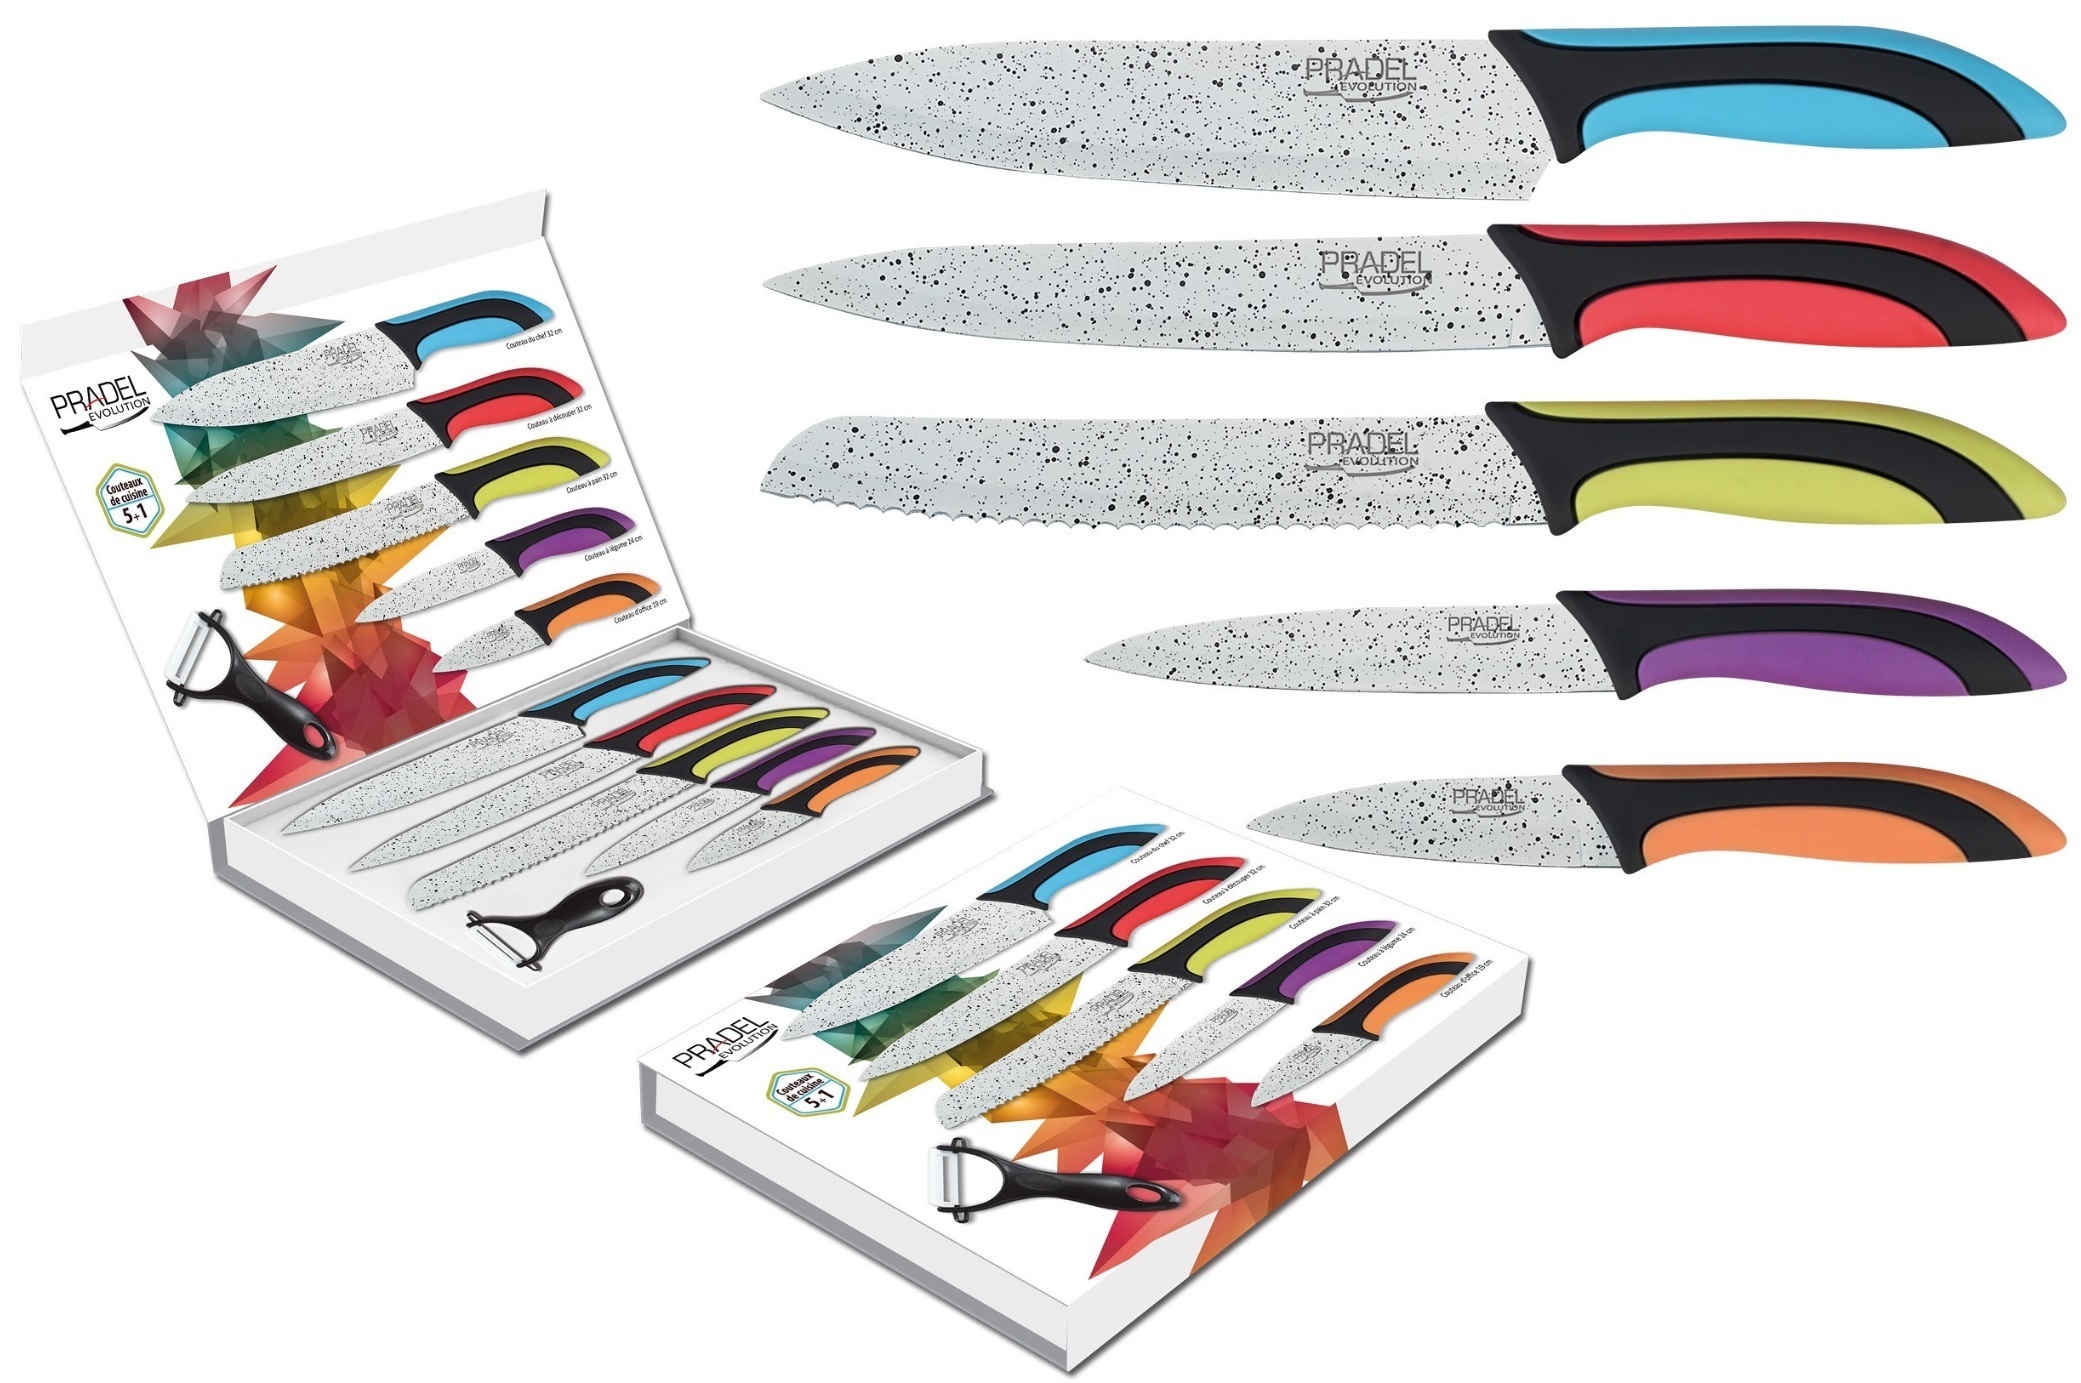 Coffret couteaux PRADEL couteau de cuisine table - Pierre blanche couleur